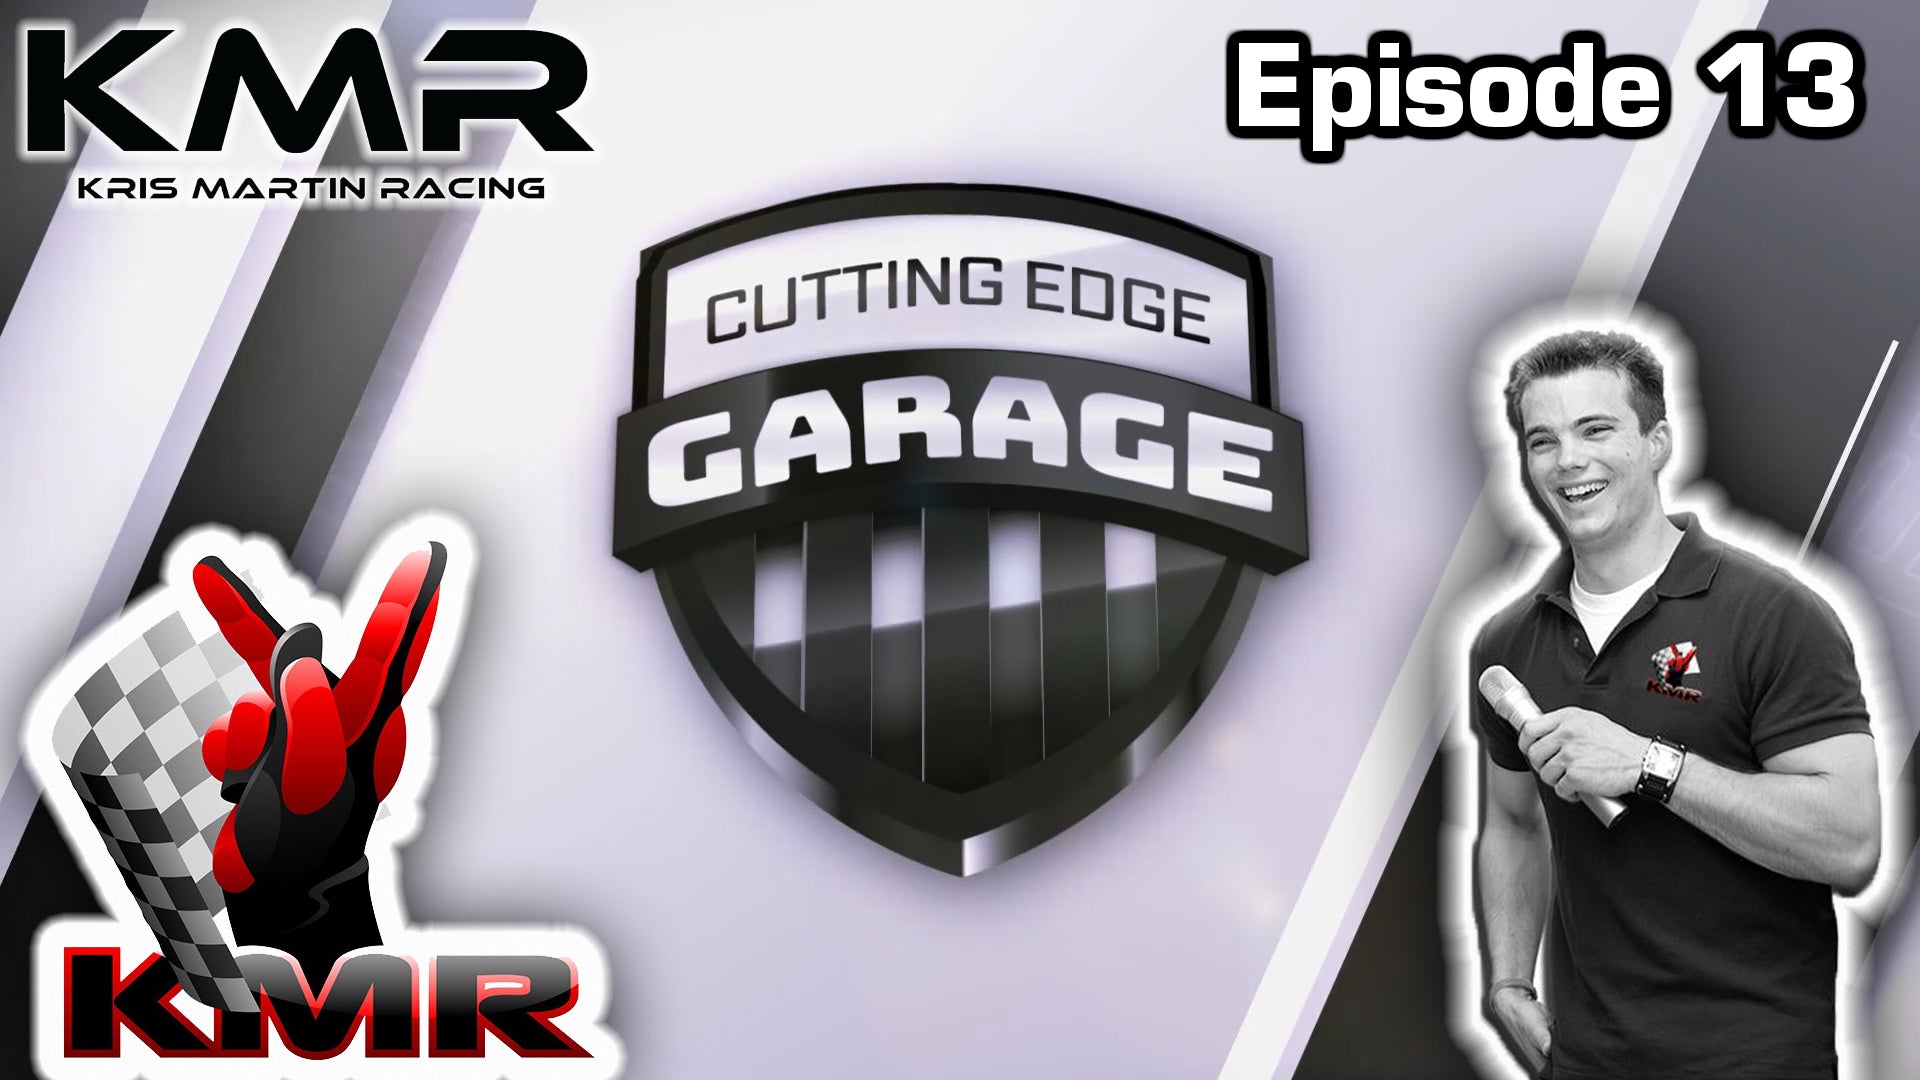 Cutting Edge Garage - Episode 13